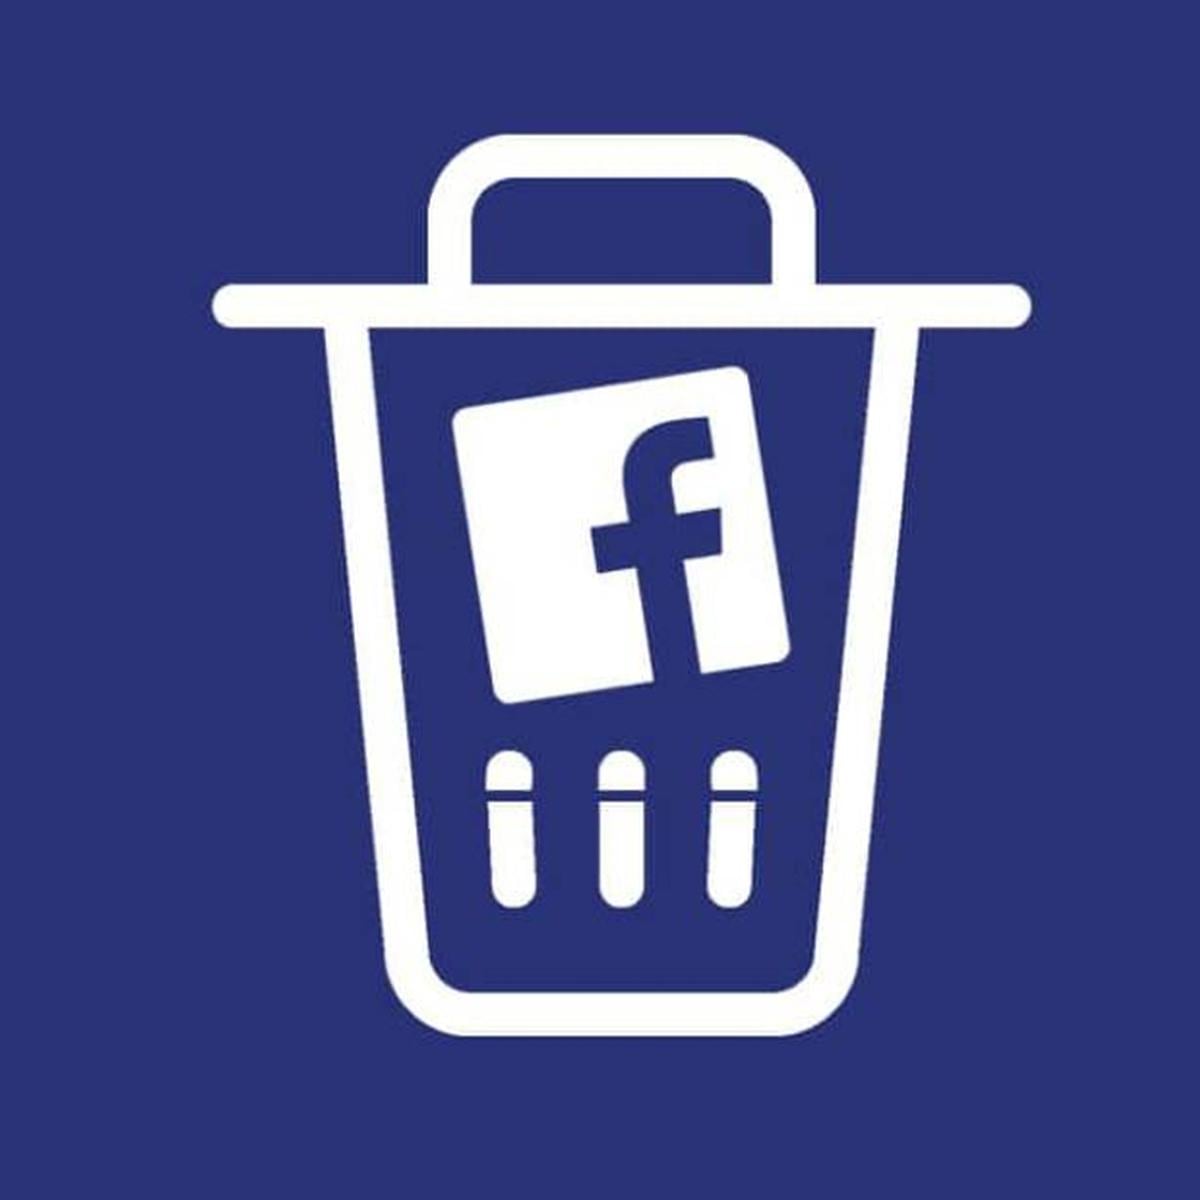 Desactivar temporalmente facebook